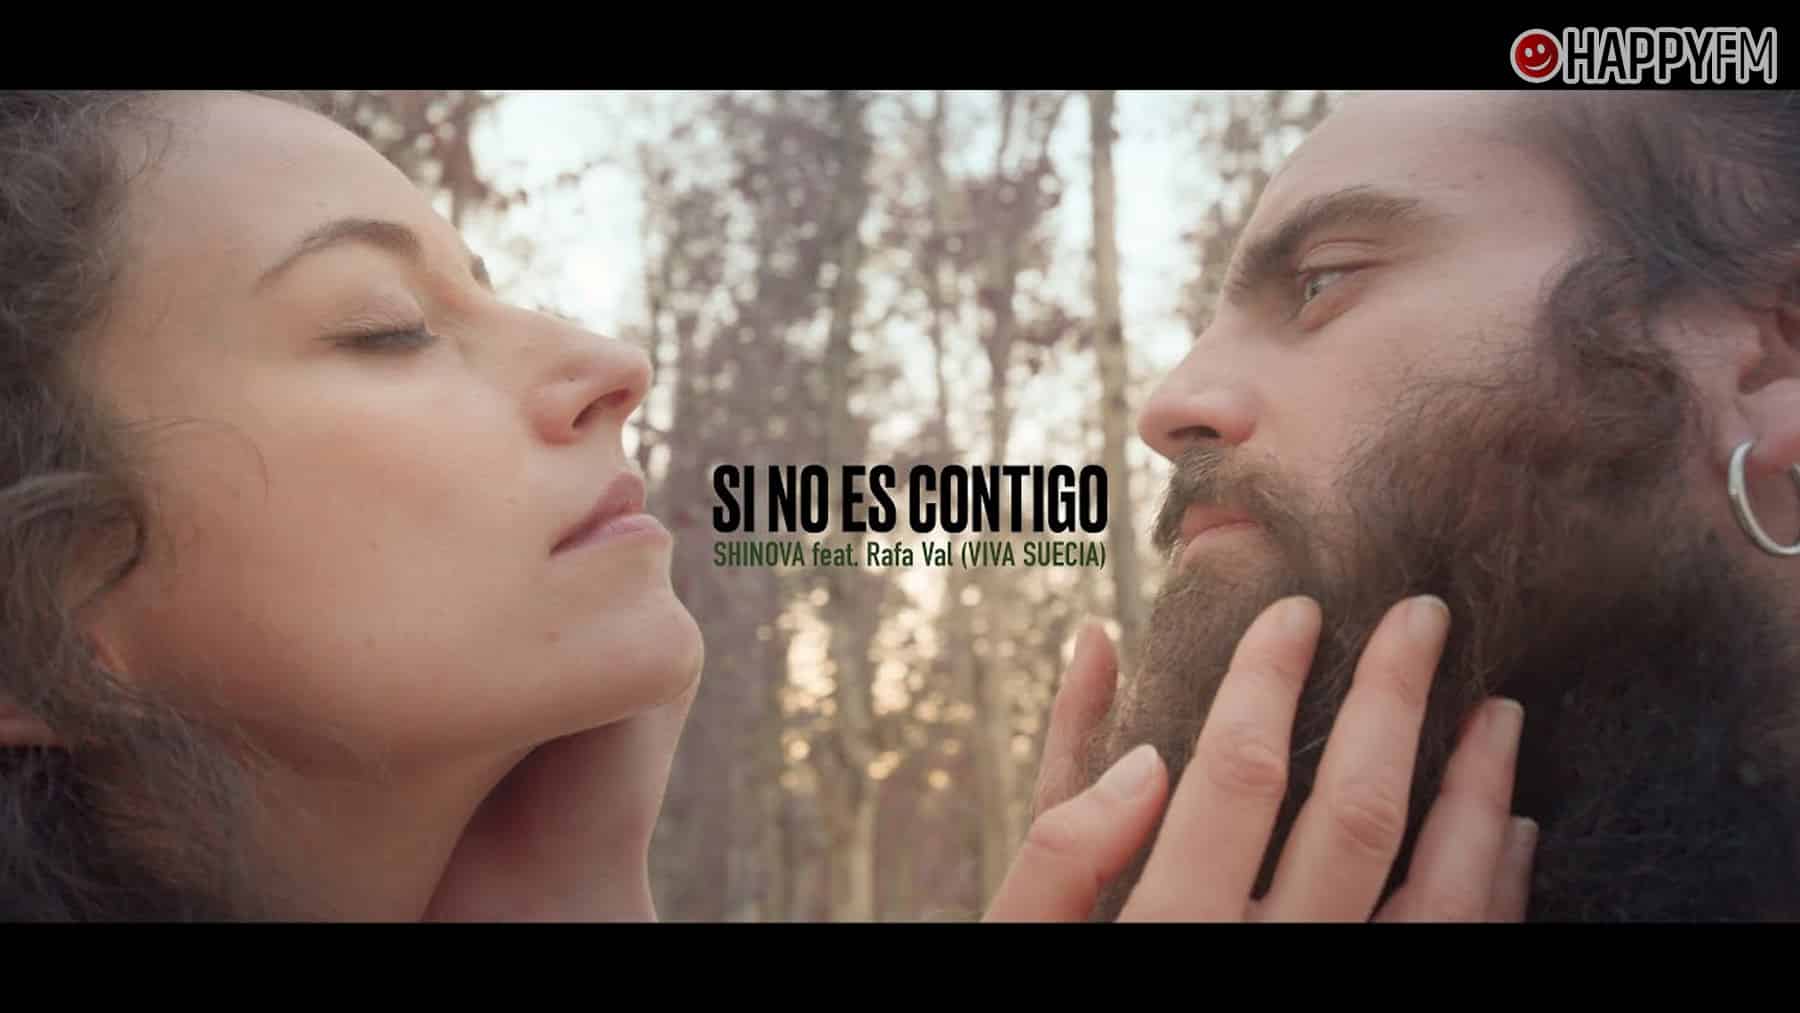 ‘Si no es contigo’, de Shinova y Rafa Val (Viva Suecia): letra y vídeo